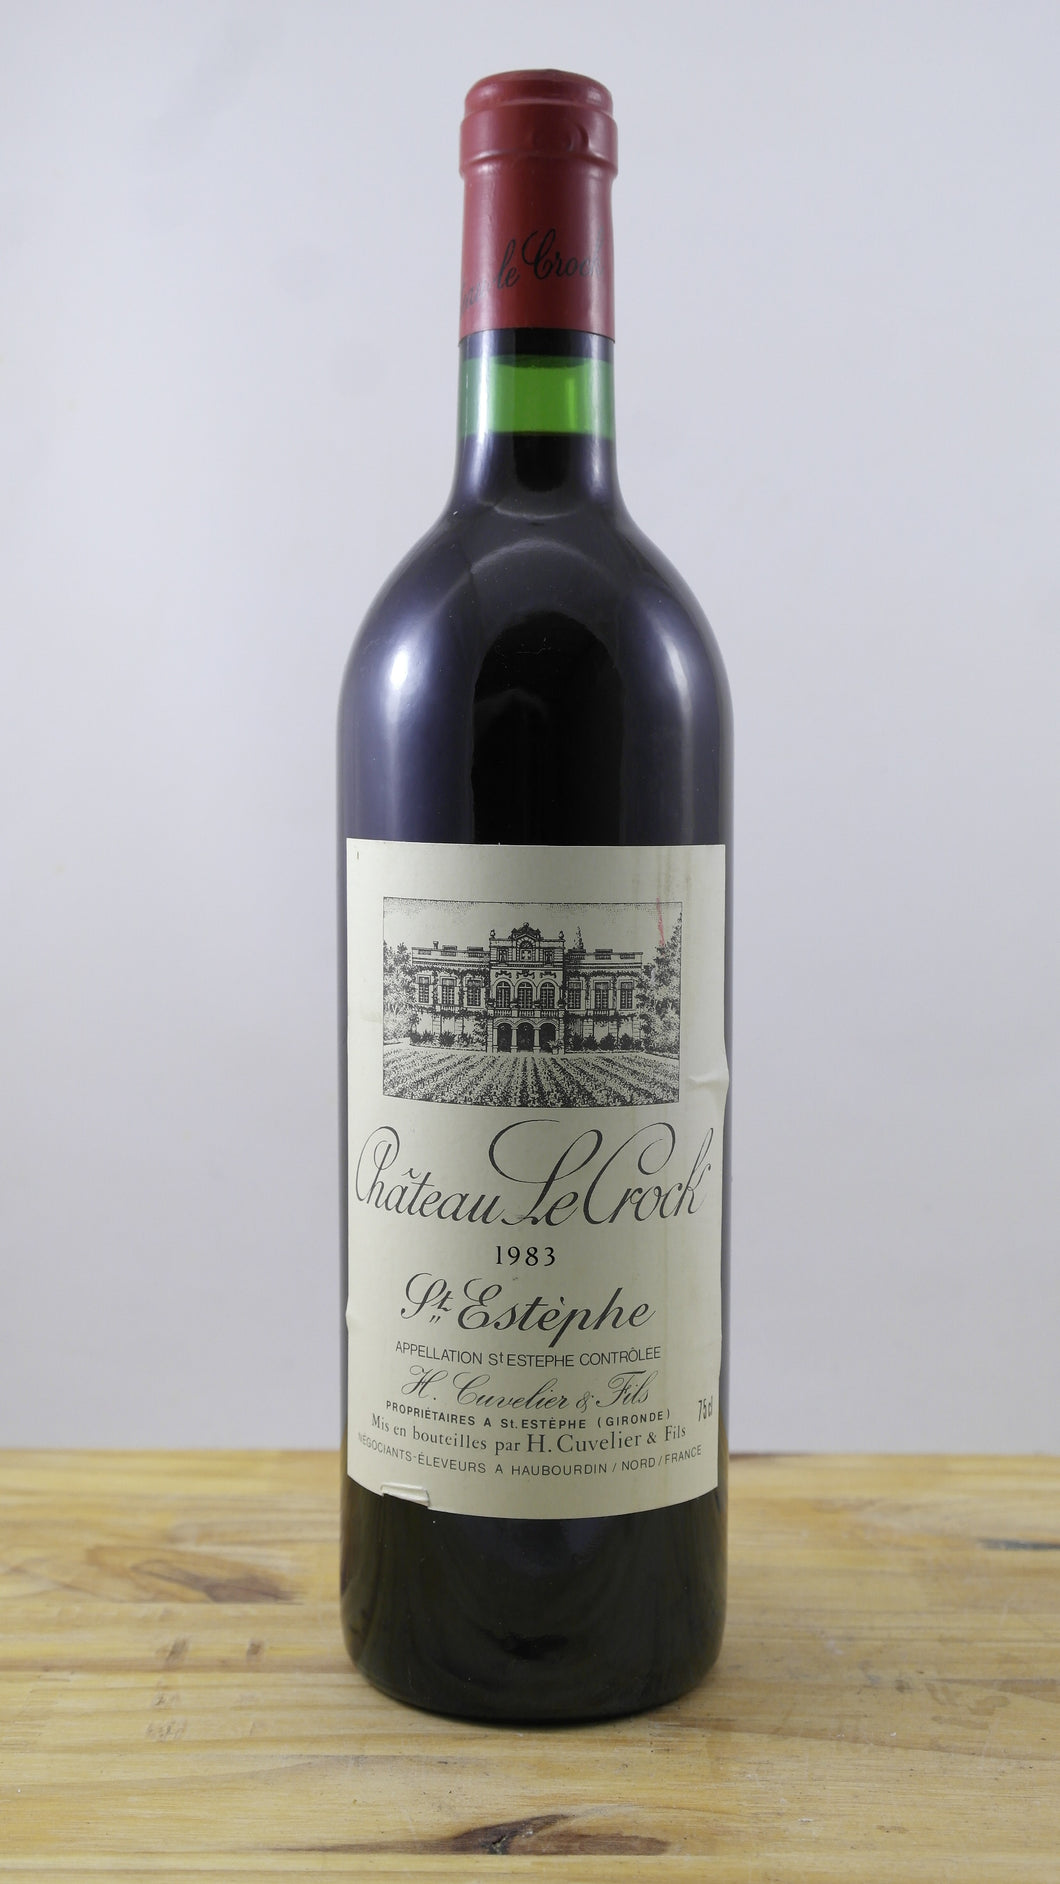 Château Le Crock Vin 1983